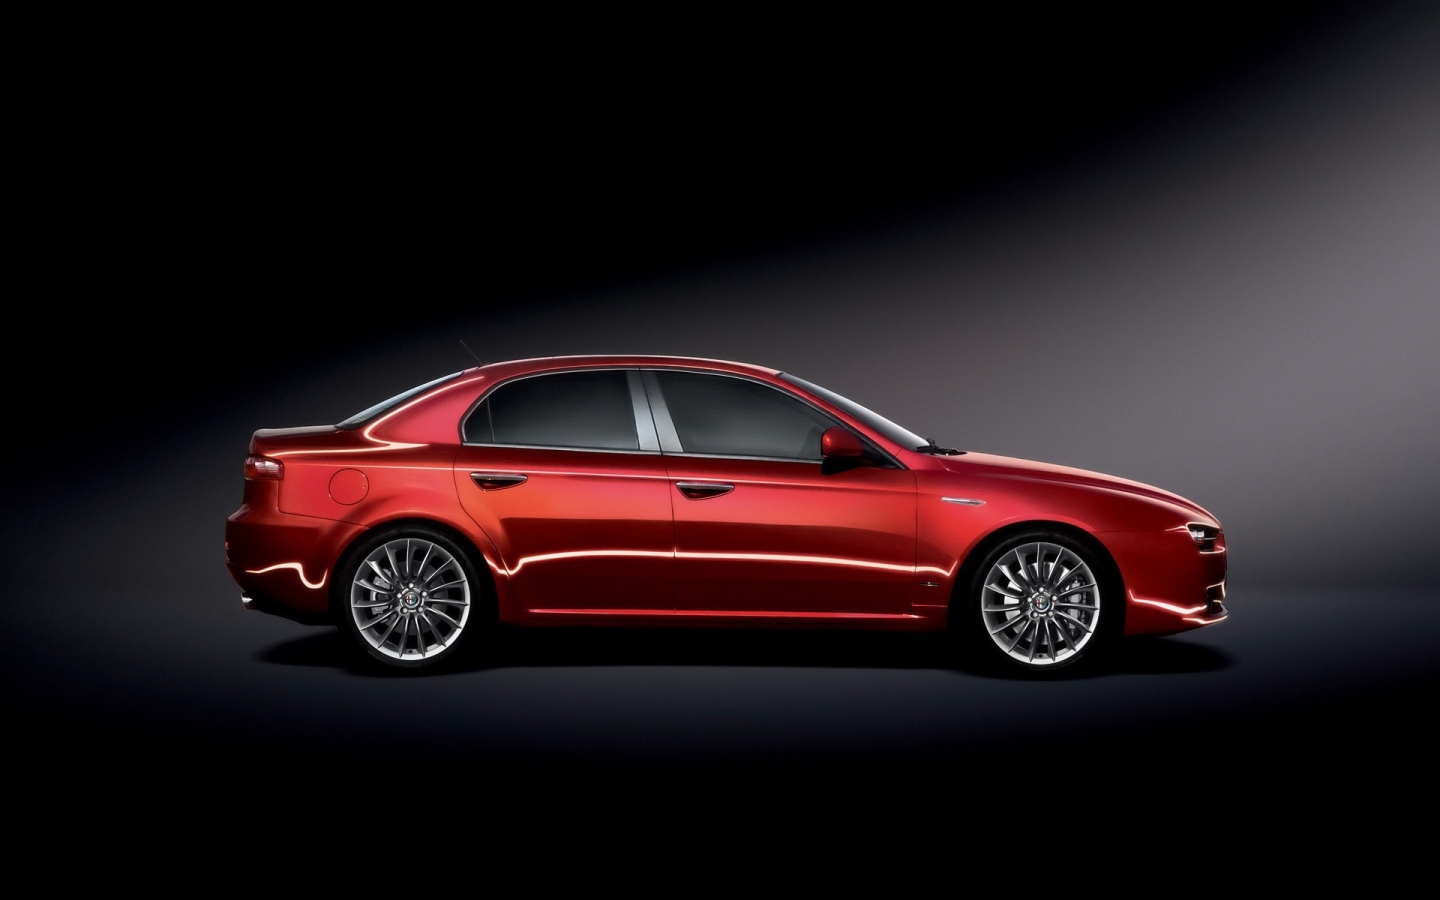 Alfa Romeo 159 2009 Studio for 1440 x 900 widescreen resolution